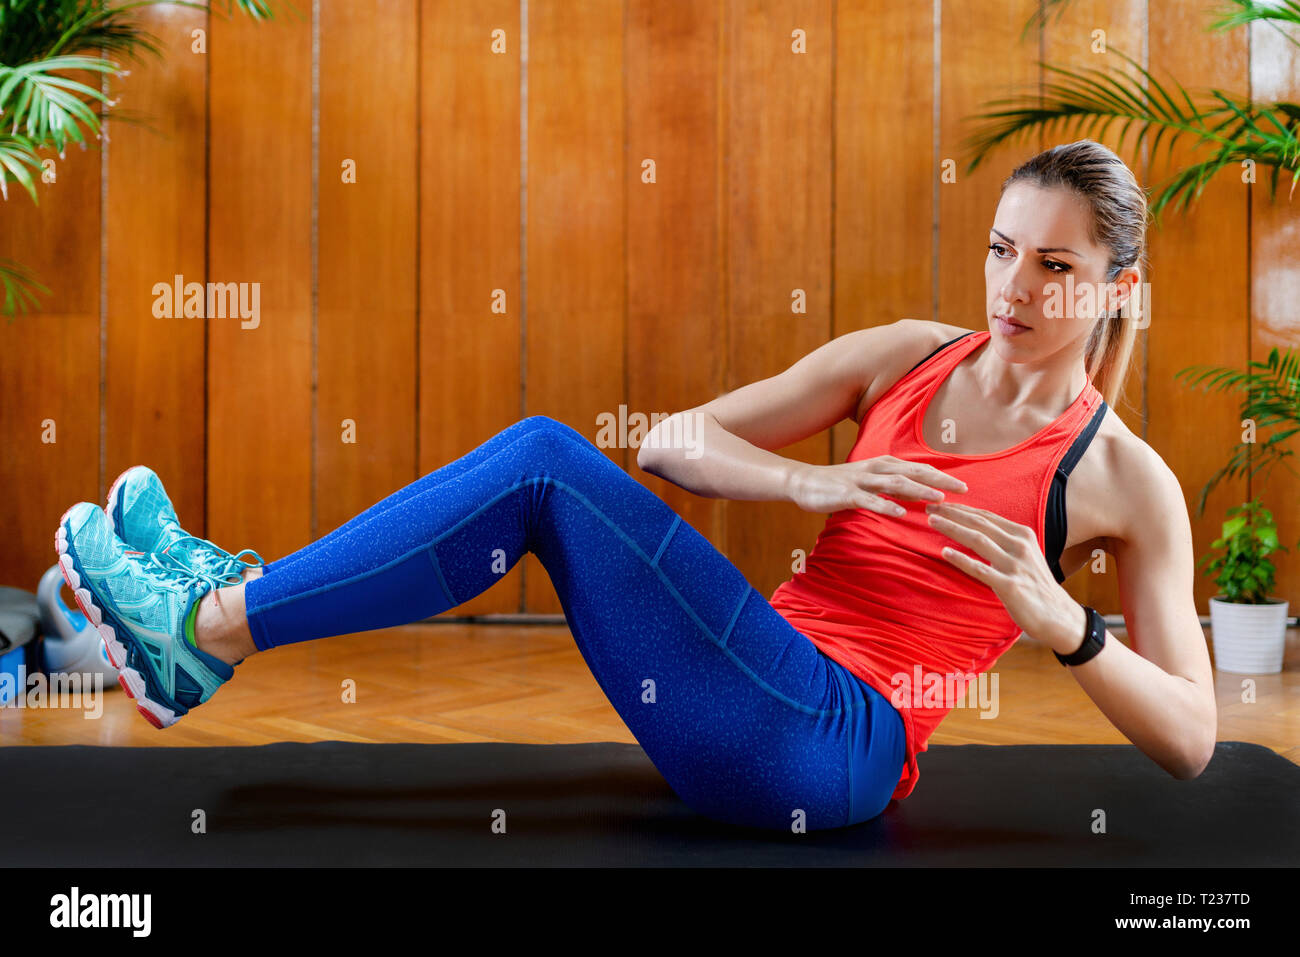 Frau training Bauchmuskeln auf hoher Intensität - Intervall Training zu Hause. Stockfoto